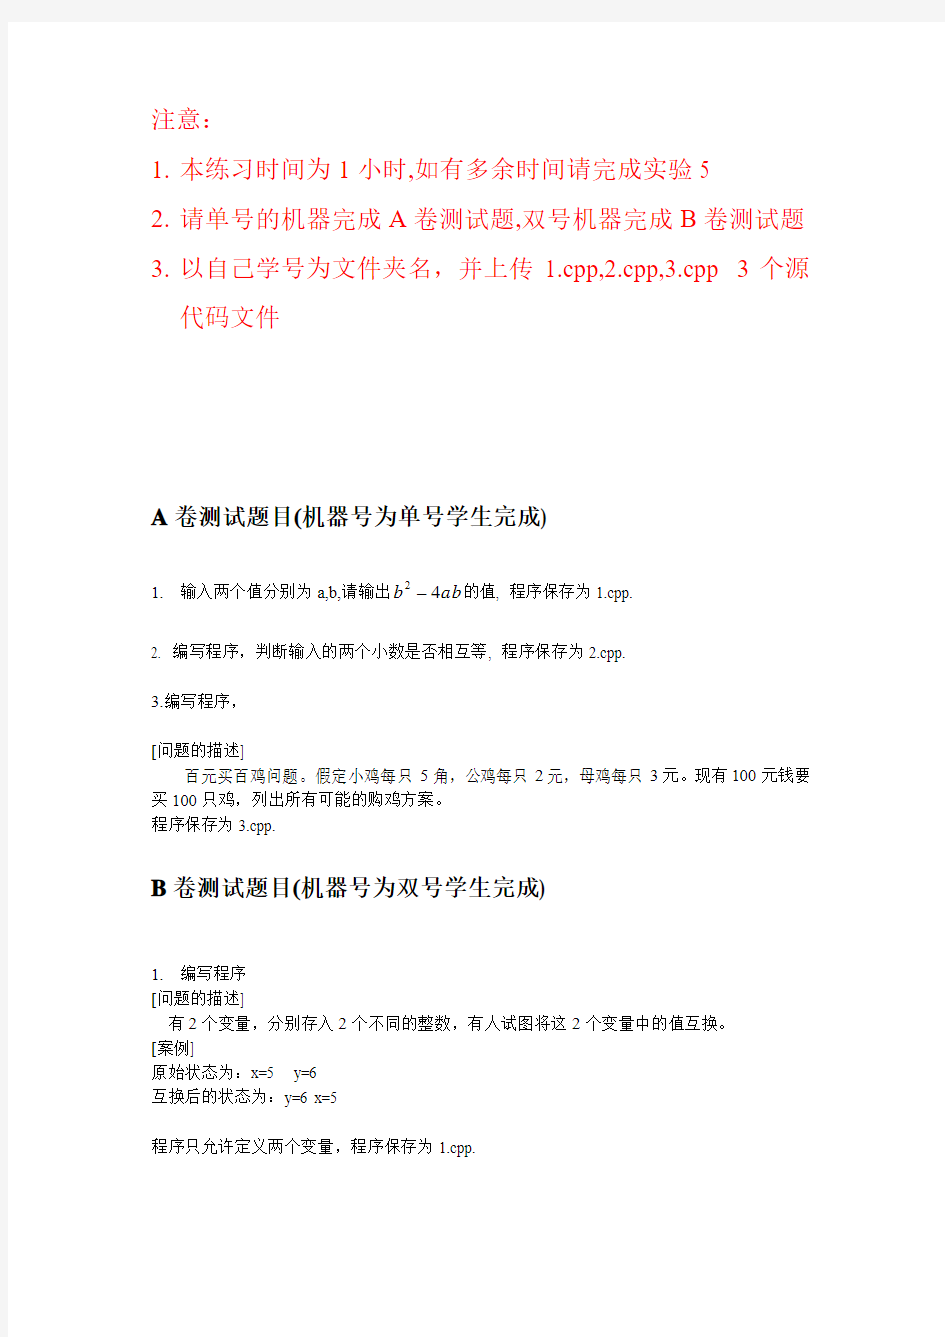 上海理工大学 C语言 第二套试题